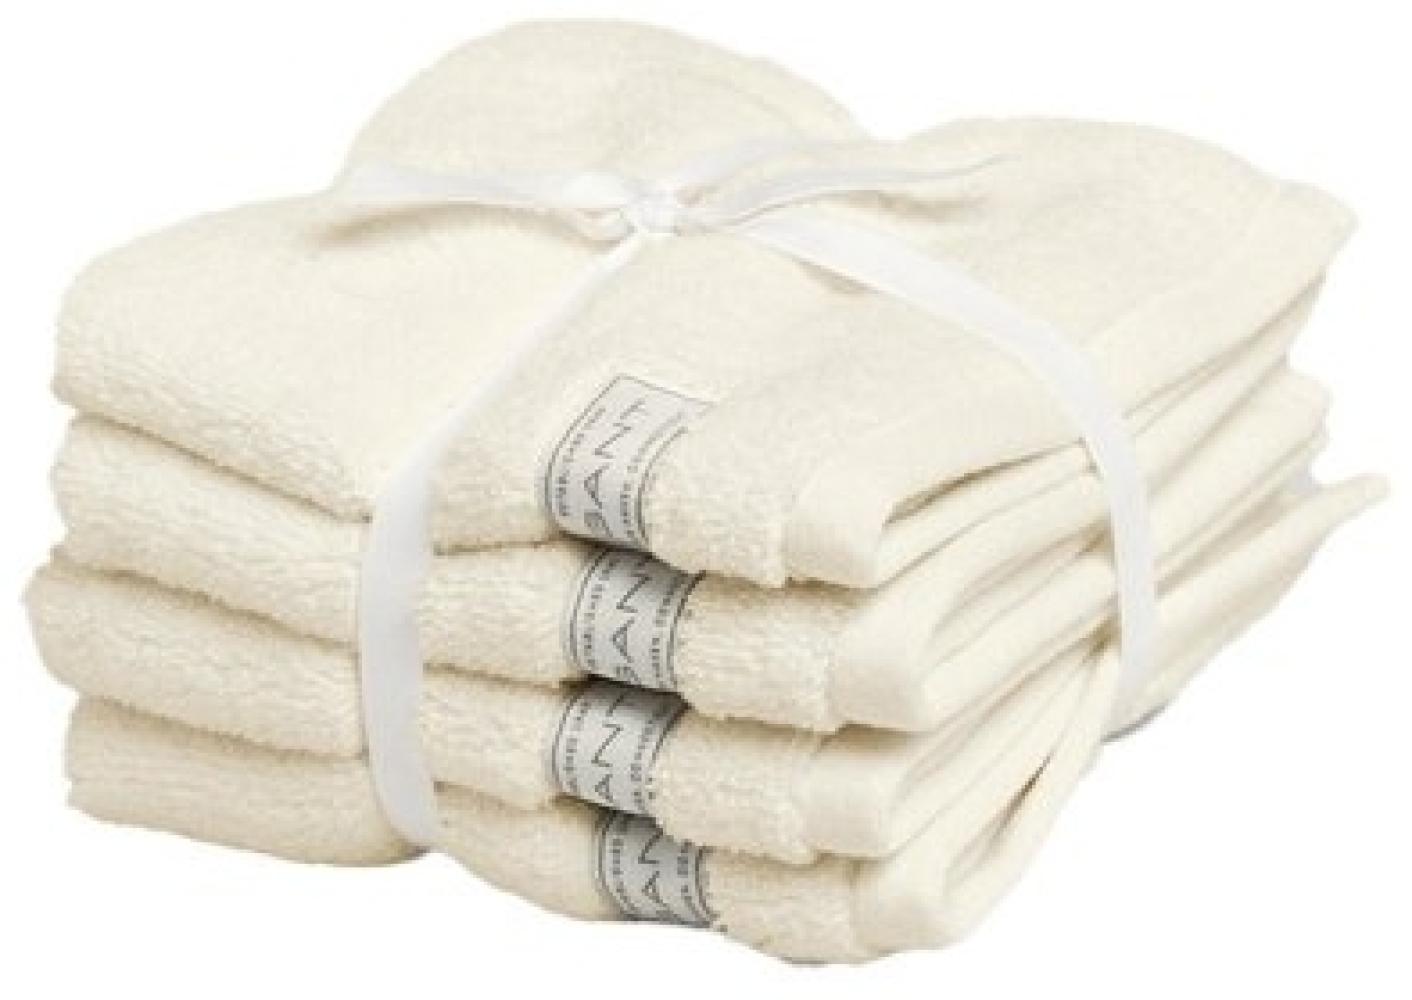 Gant Home Seifentuch Set Gesichtstücher Premium Towel Sugar White (30x30cm) (4-teilig) 852012401-131-30x30 Bild 1